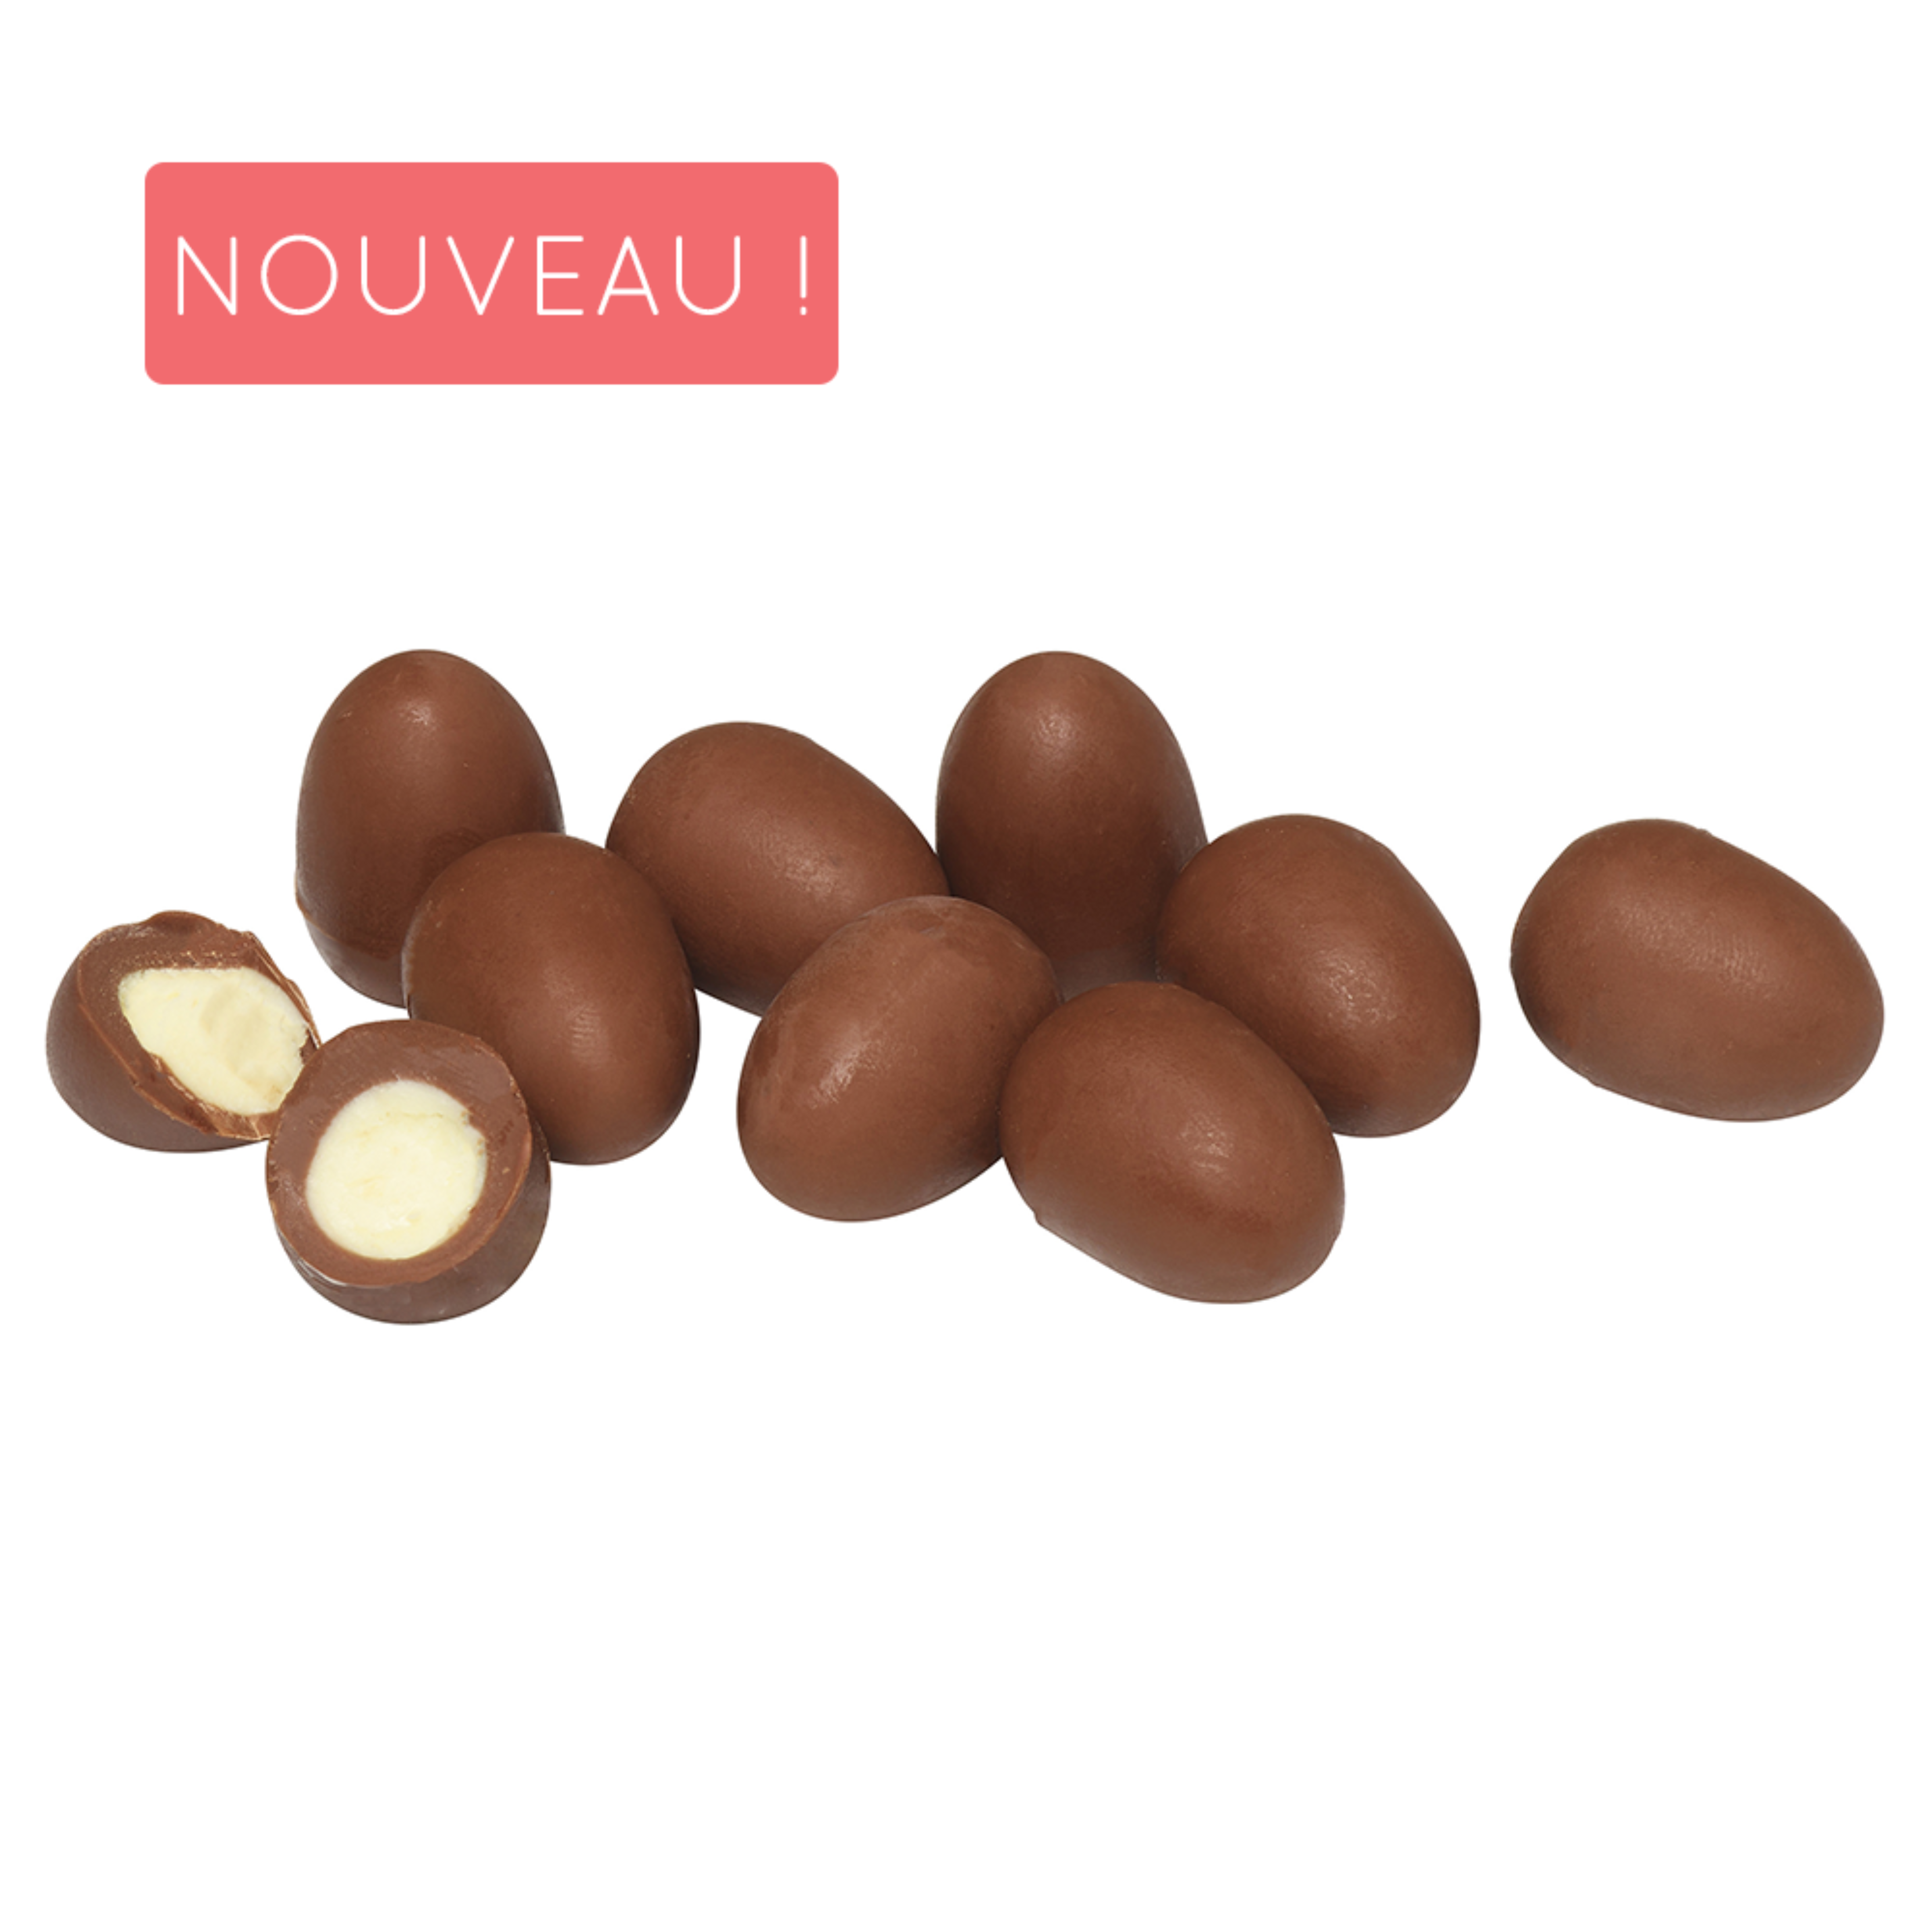 Belledonne Oeufs coeur lacté chocolat au lait bio 100g - 001256